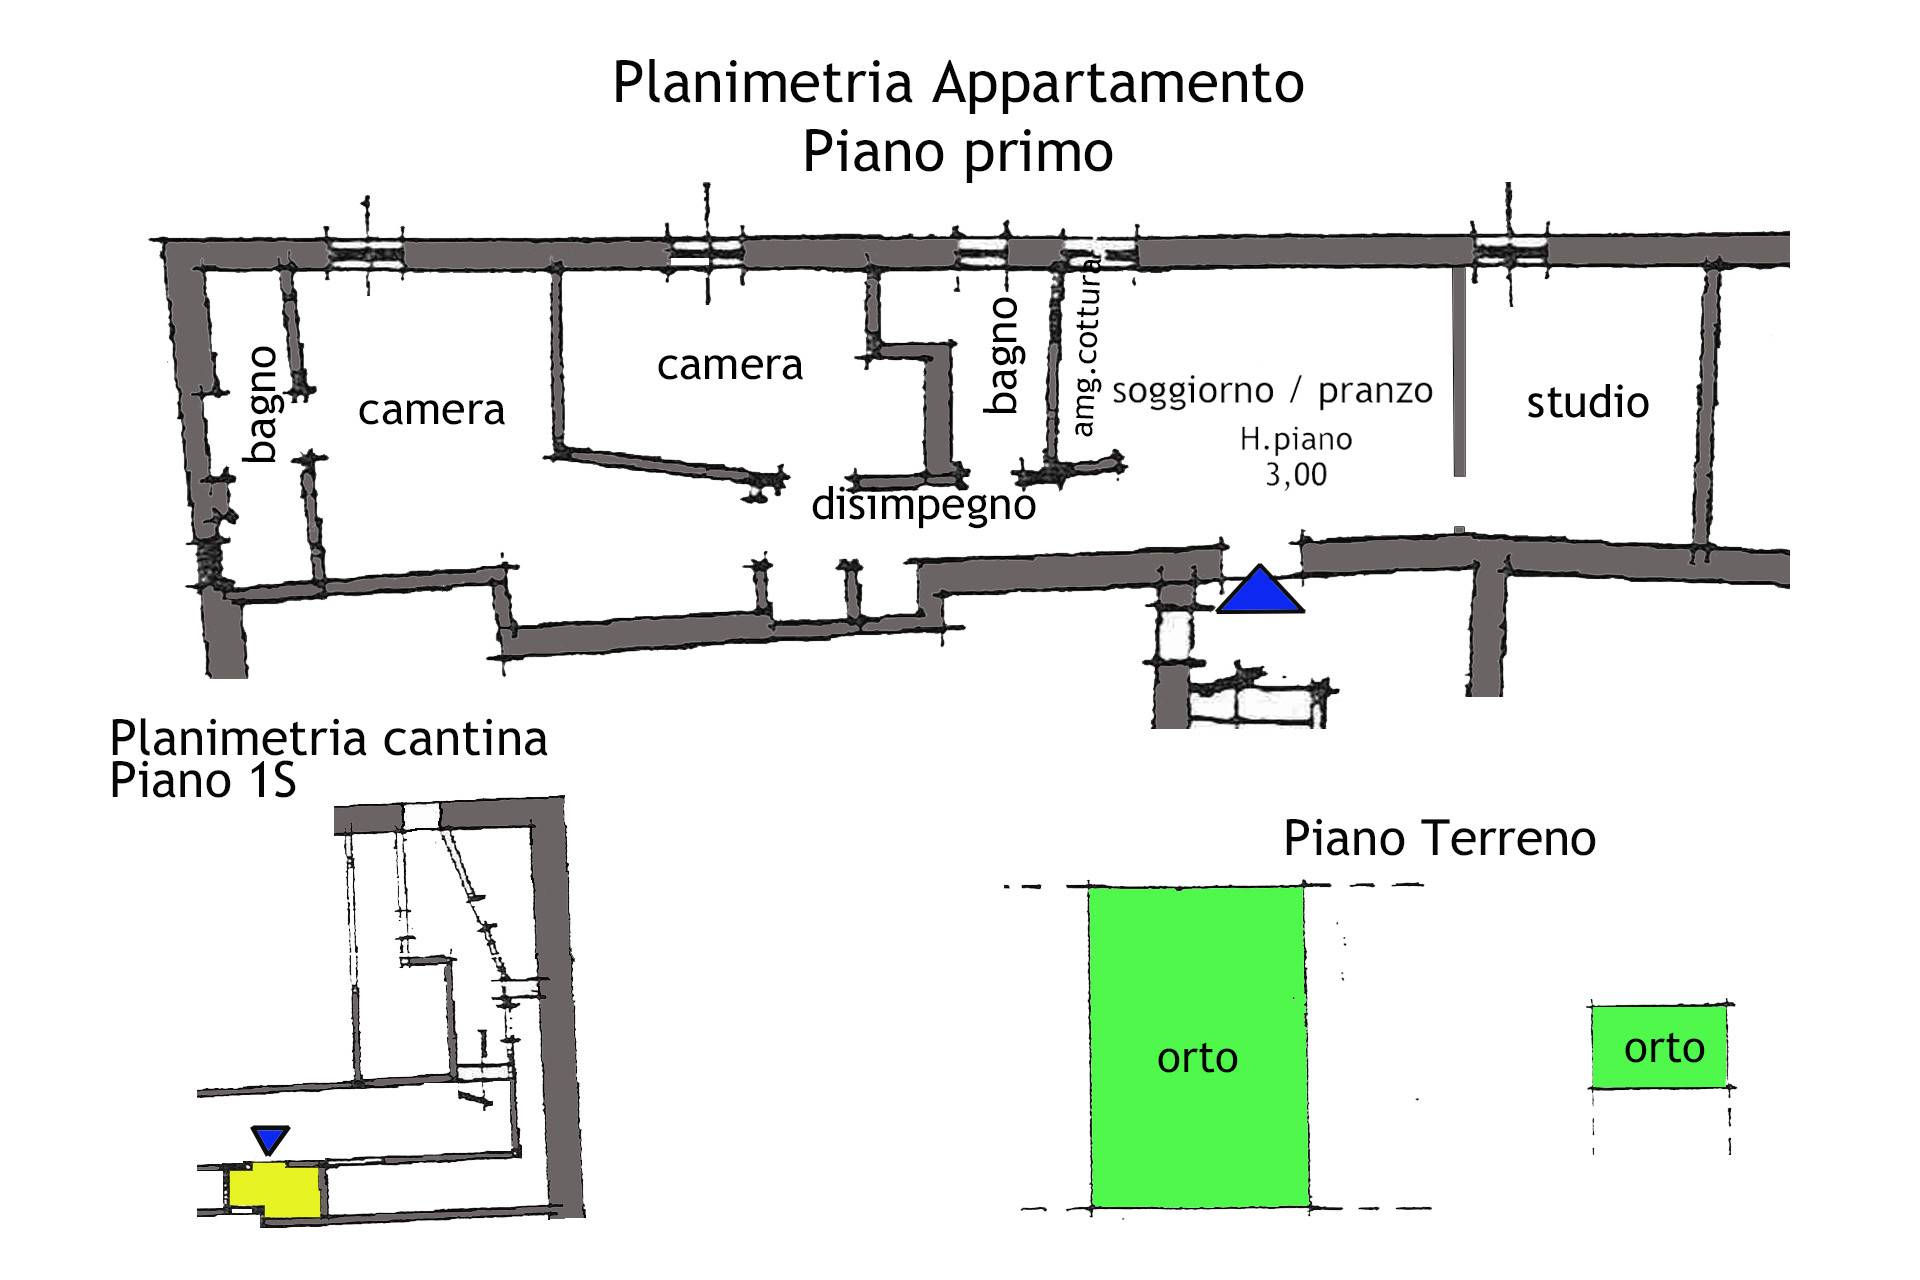 R161 - Planimetria